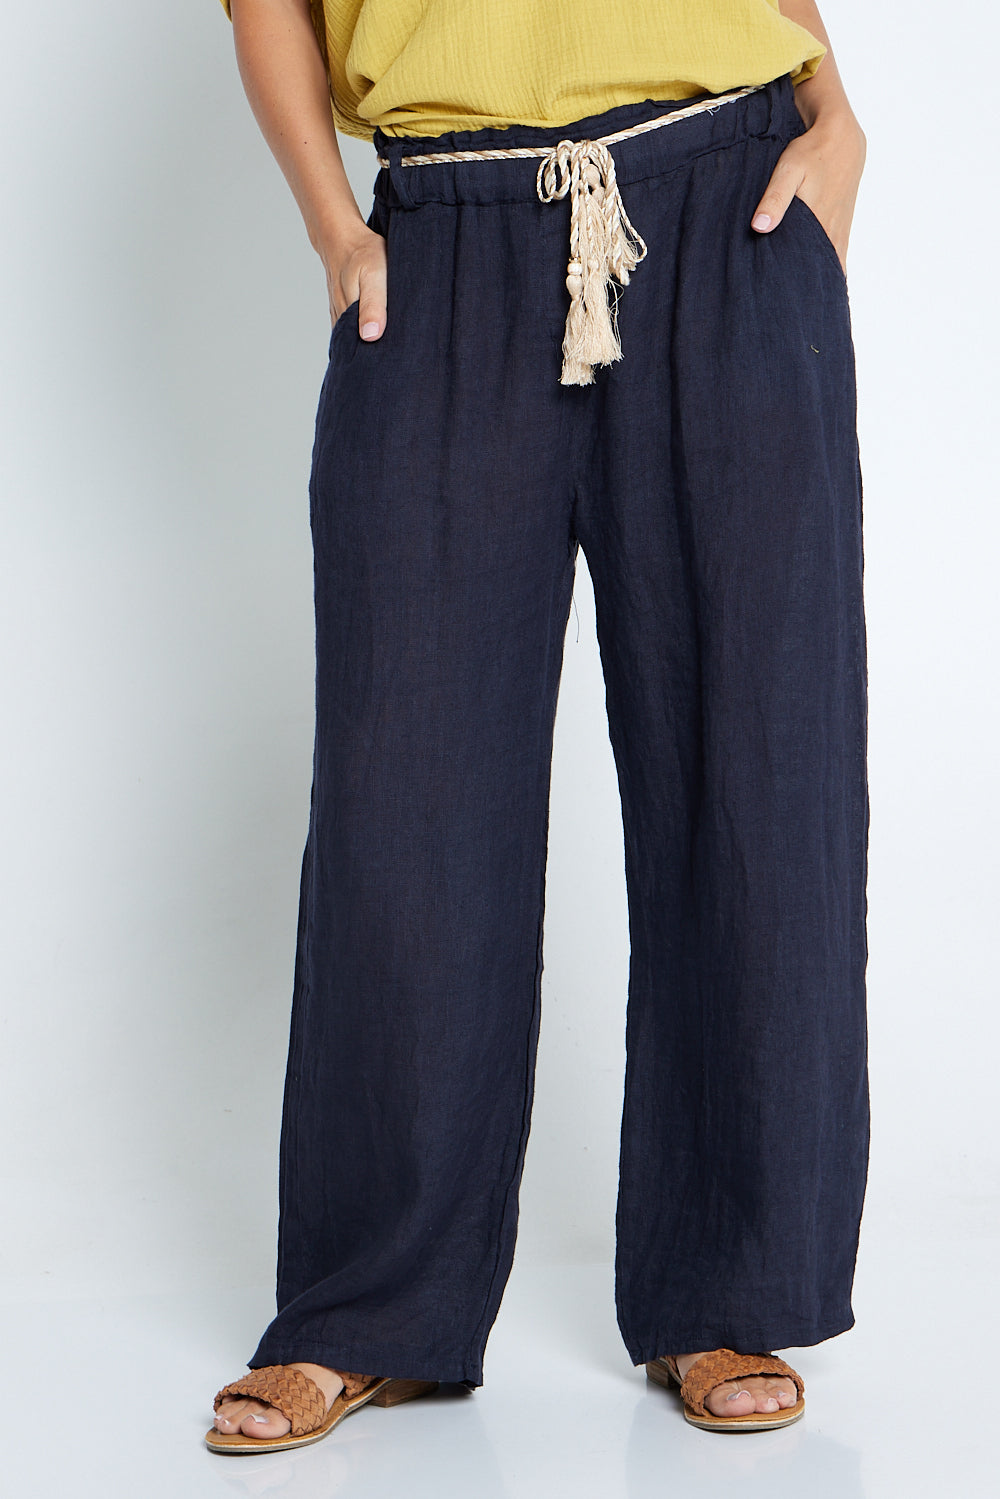 Positano Linen Pants - Navy  La Strada – TULIO Fashion